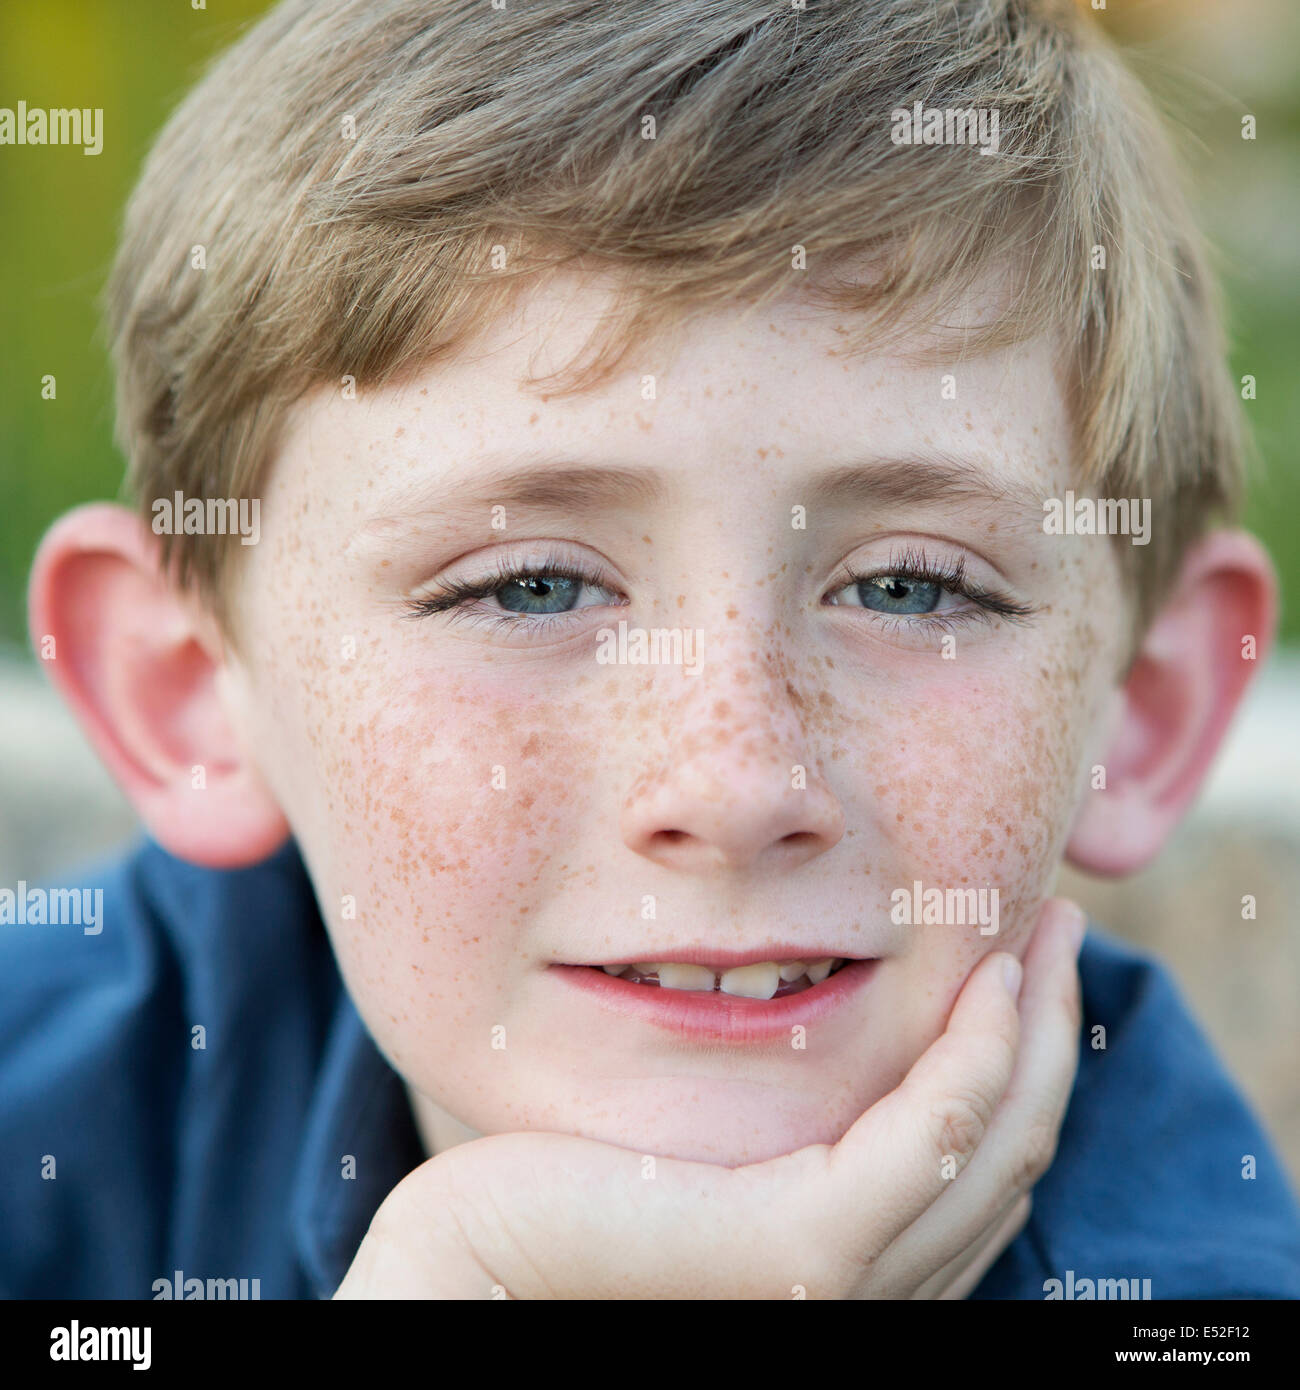 Head and shoulders portrait d'un jeune garçon assis avec son menton reposant sur sa main. Banque D'Images